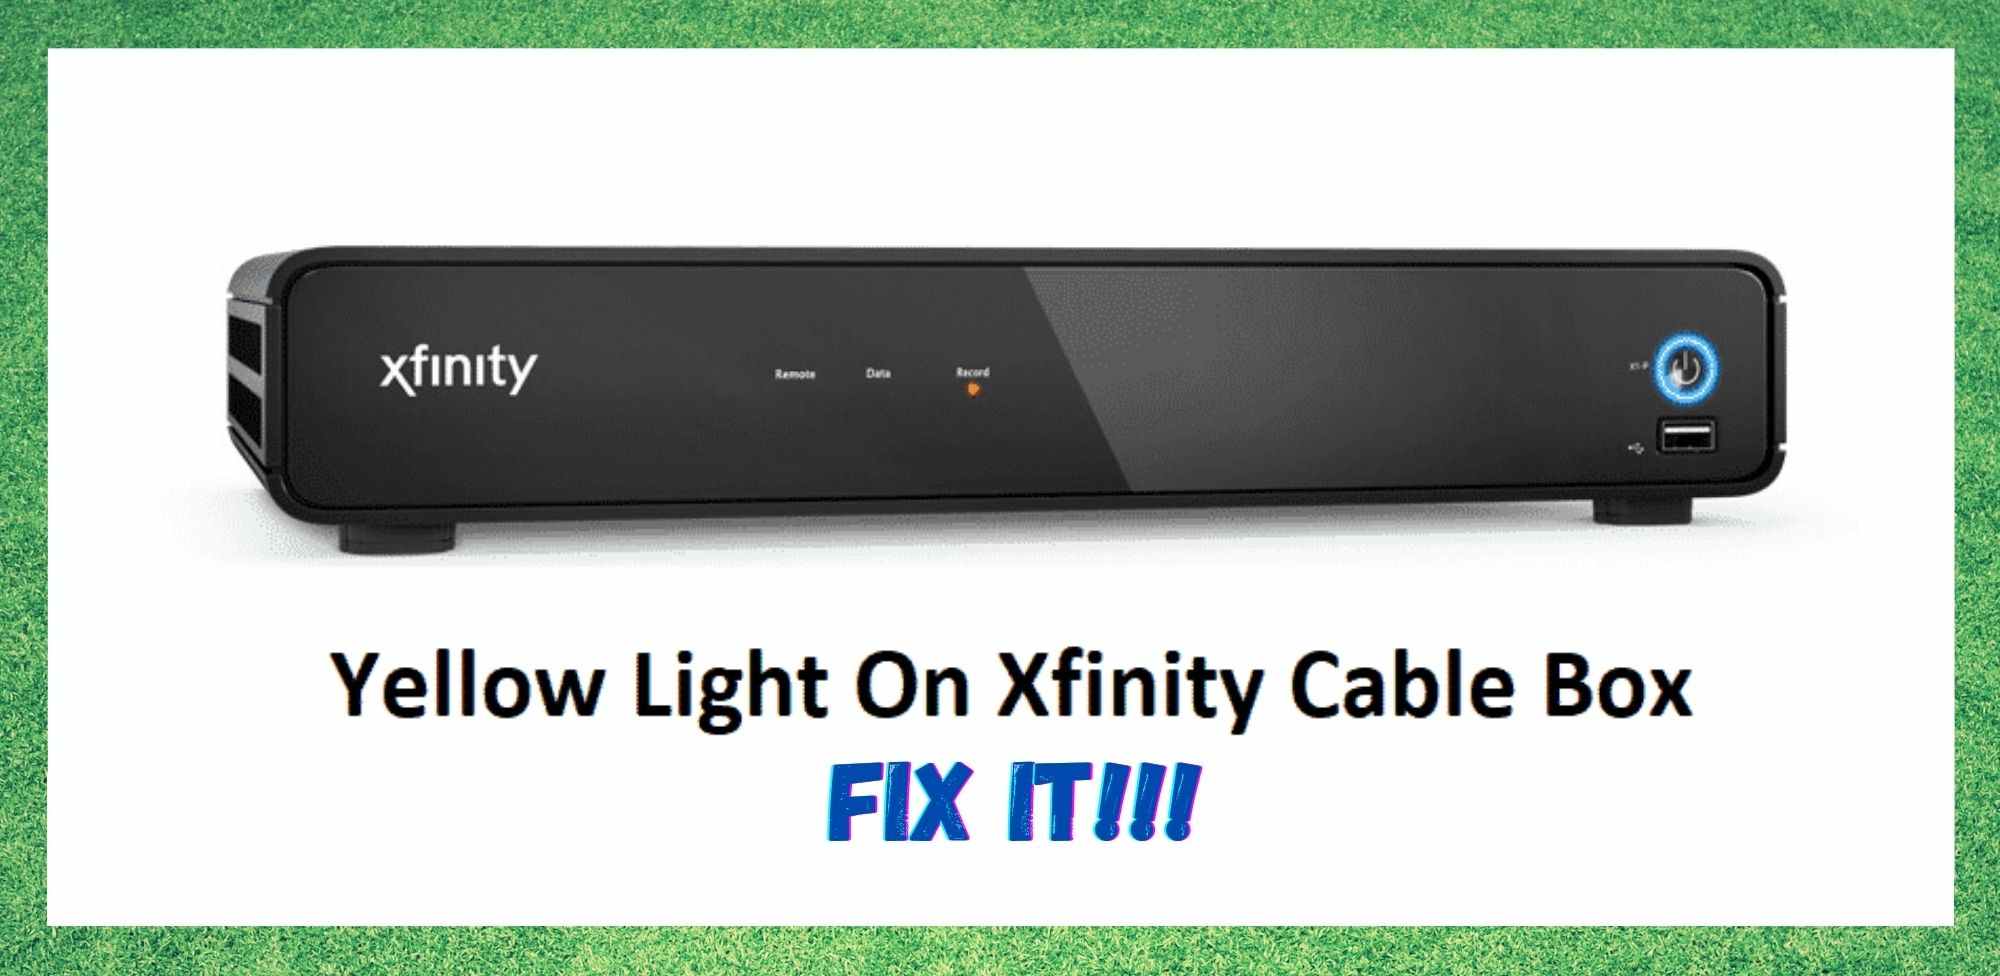 5 spôsobov opravy žltého svetla na káblovom boxe Xfinity